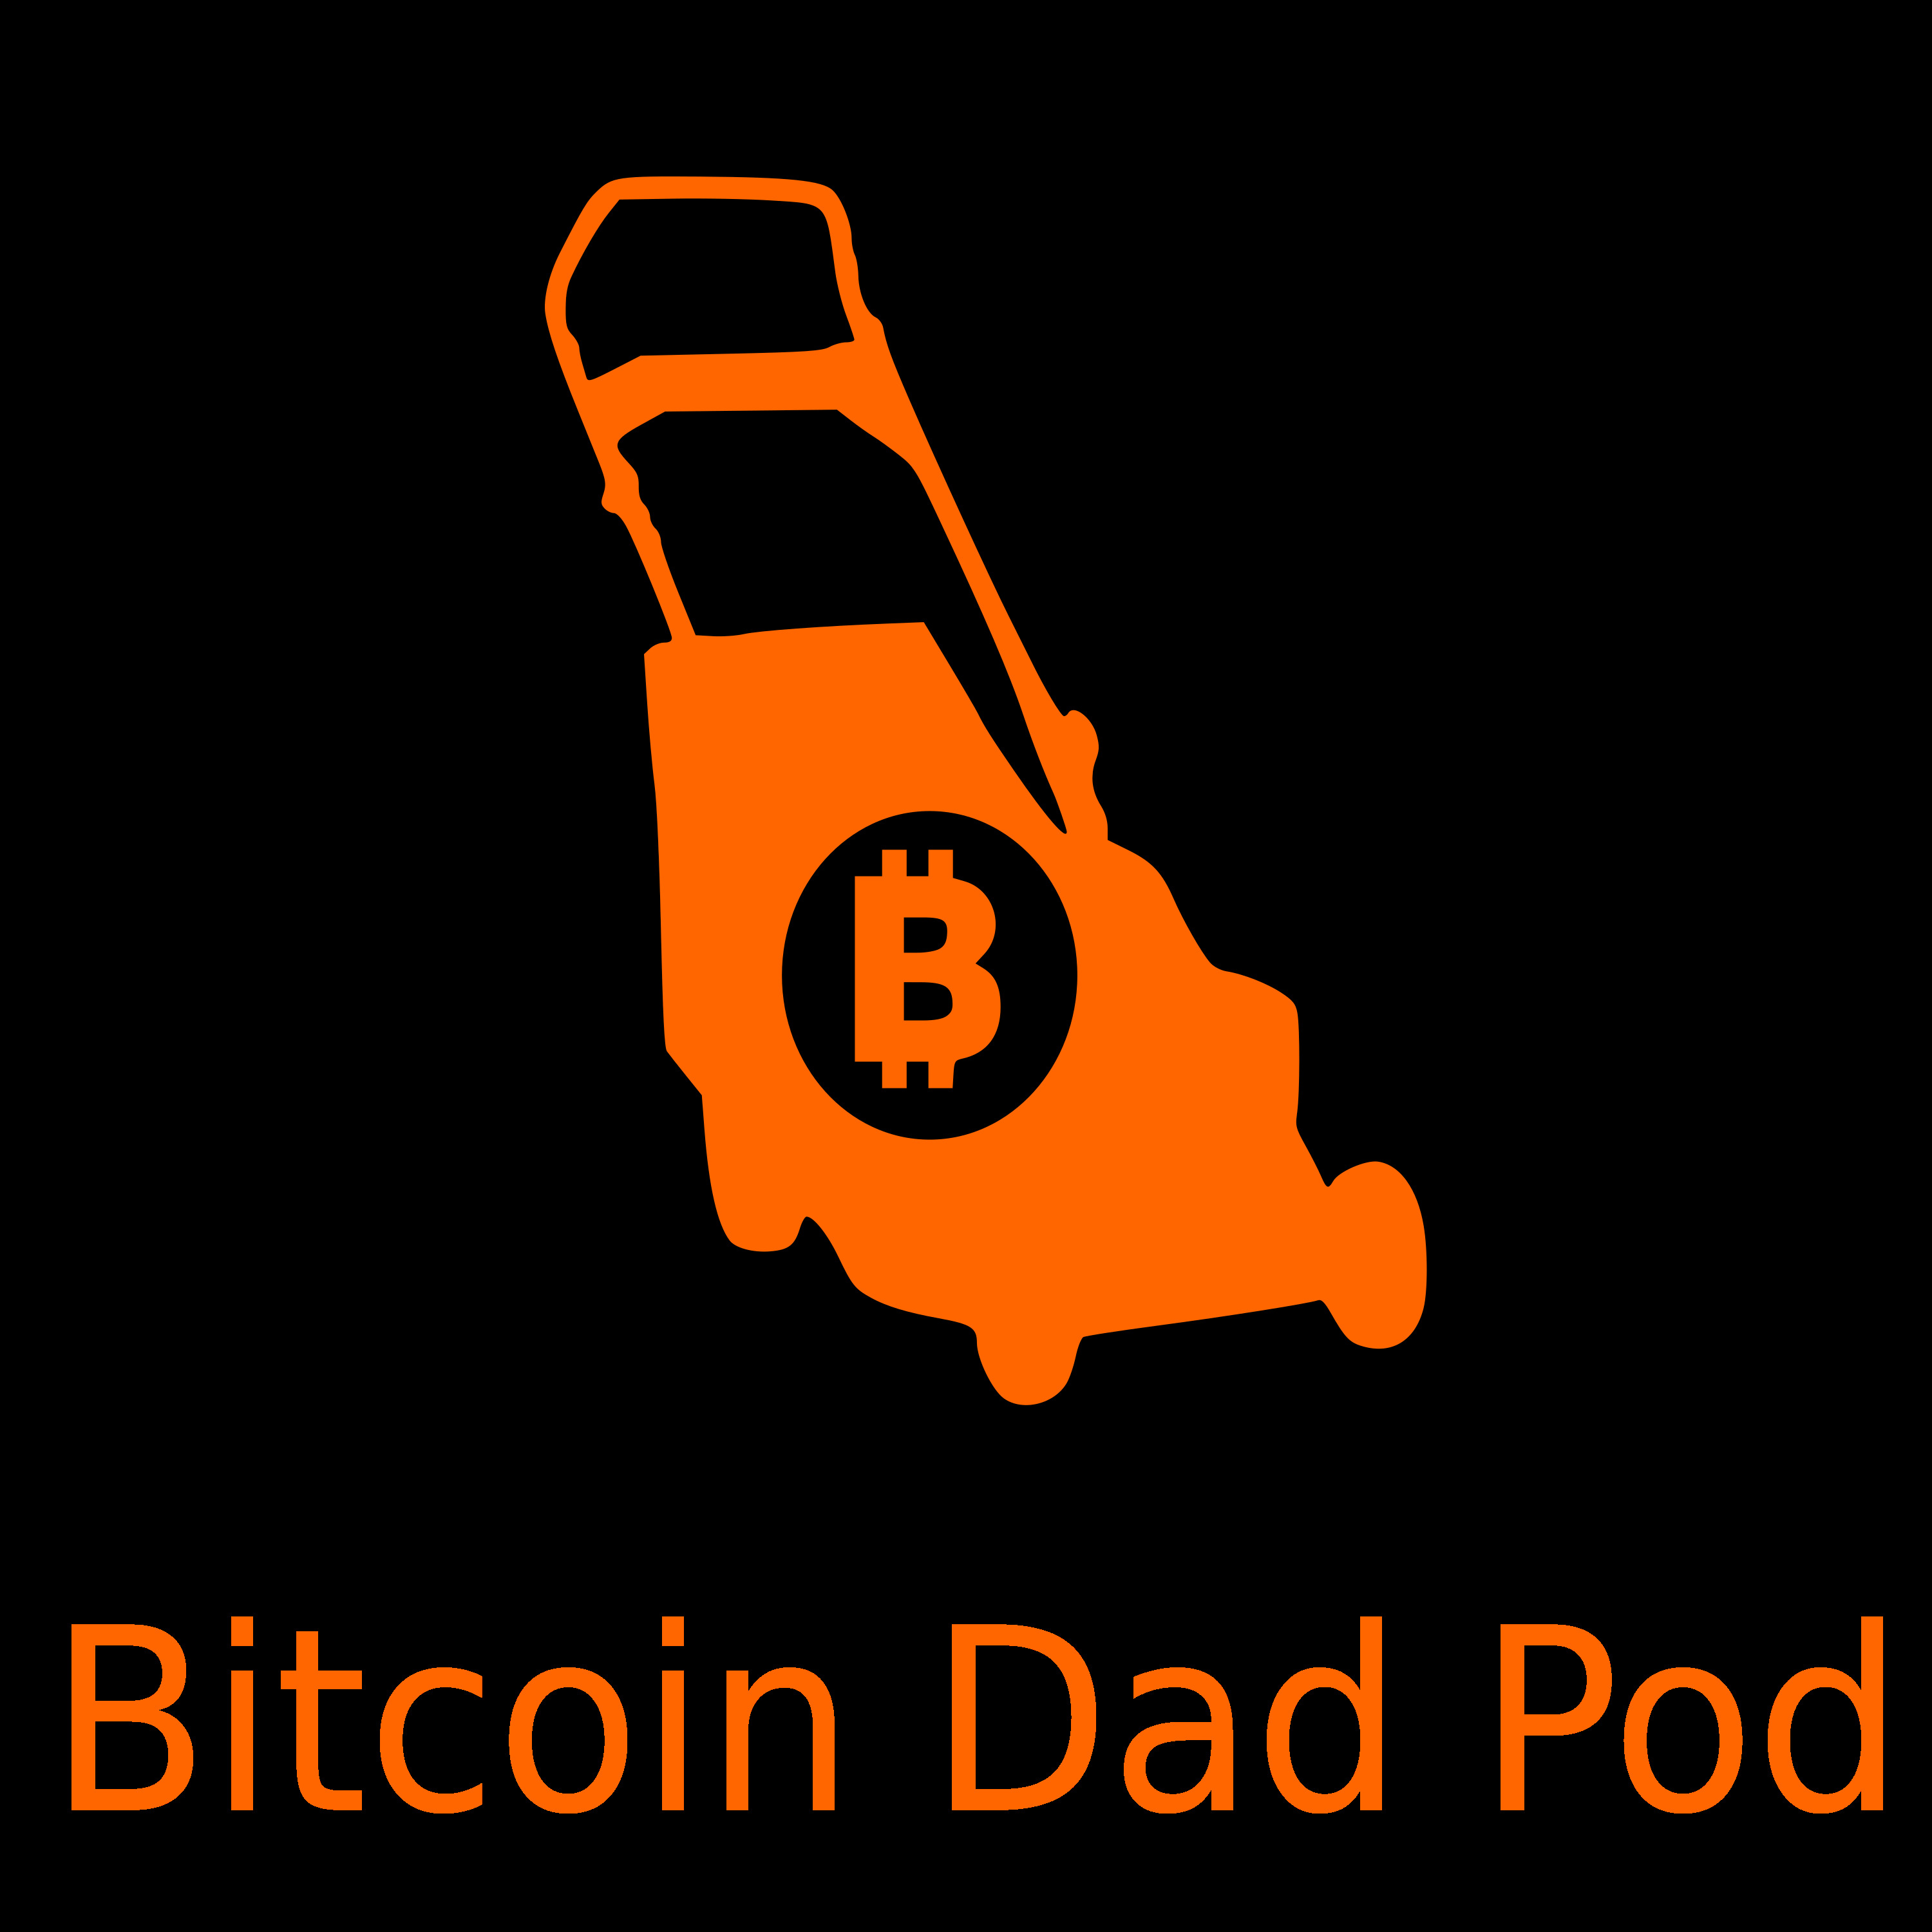 Bitcoin Dad Pod